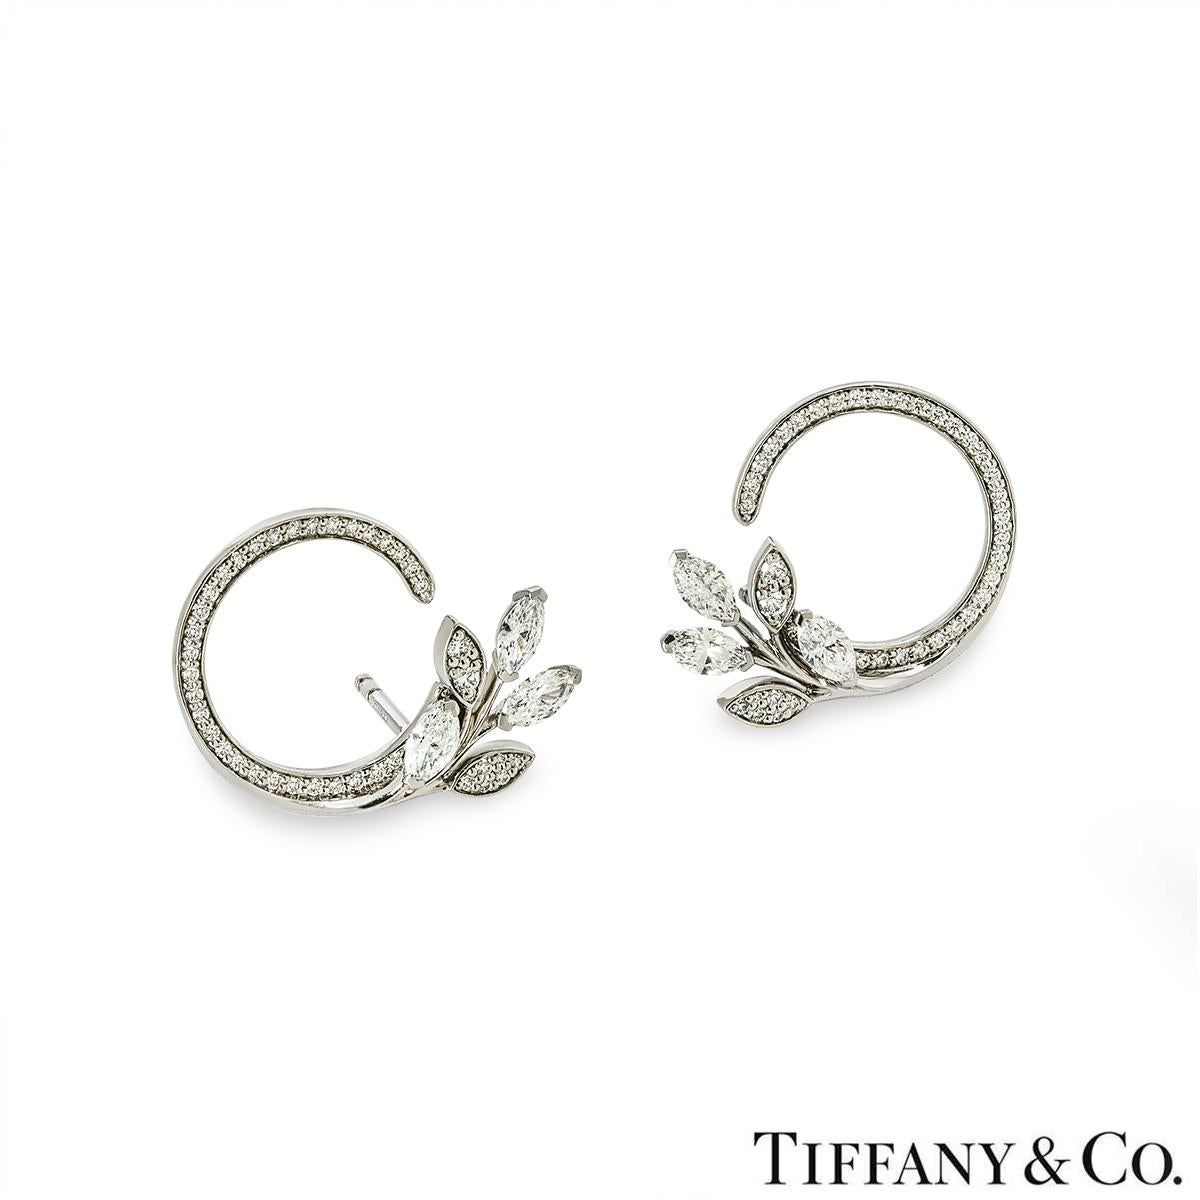 Ein atemberaubendes Paar aus Platin  Ohrringe von Tiffany & Co. aus der Victoria Vine Circle Kollektion. Die Ohrringe beginnen mit einer einzigen Reihe runder Diamanten im Brillantschliff, die einen unvollständigen Kreis bilden und in 3 Diamanten im